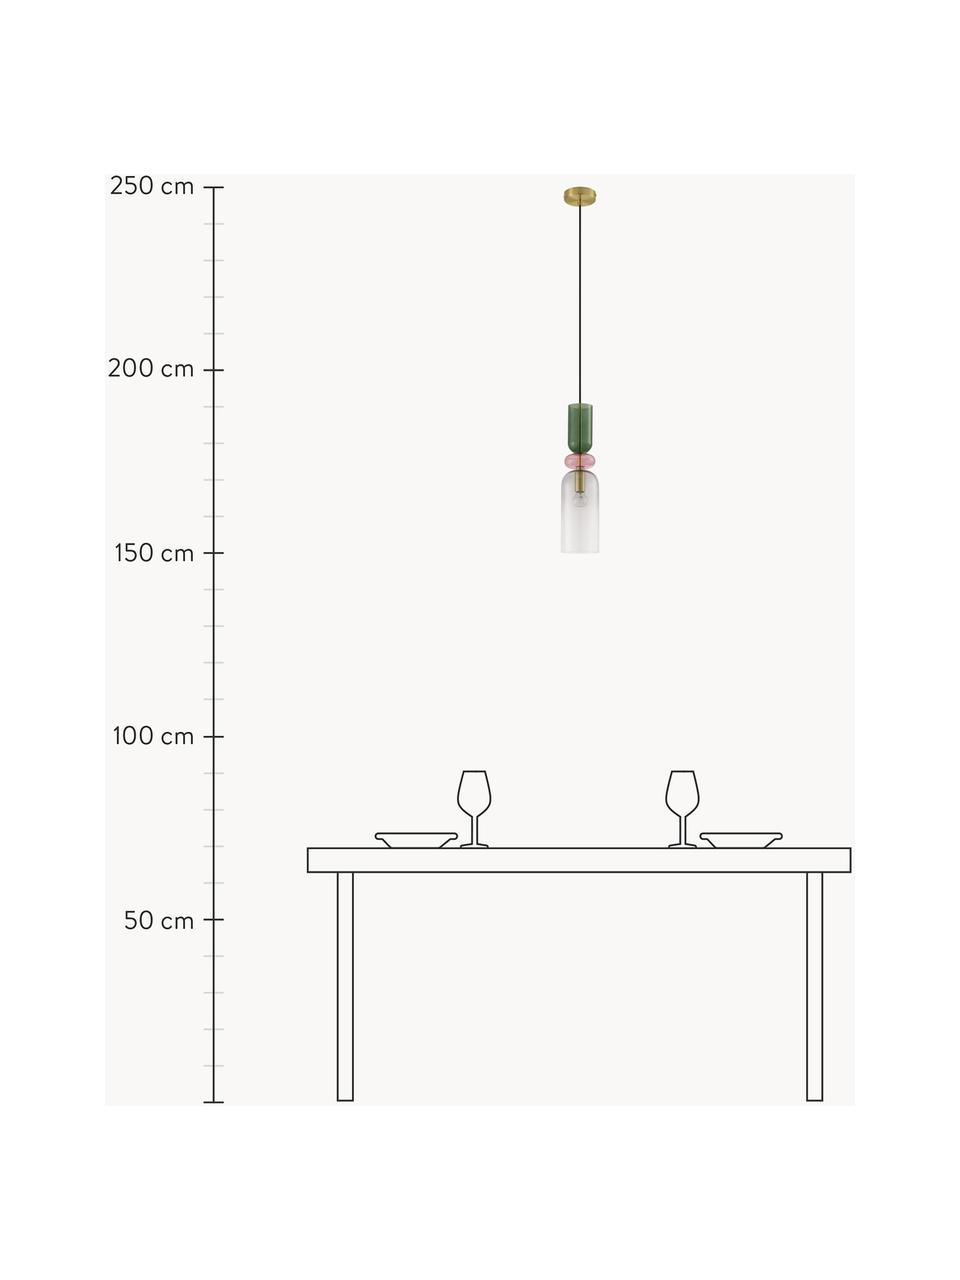 Malé závěsné svítidlo Murano, Zlatá, transparentní, růžová, zelená, Ø 11 cm, V 44 cm